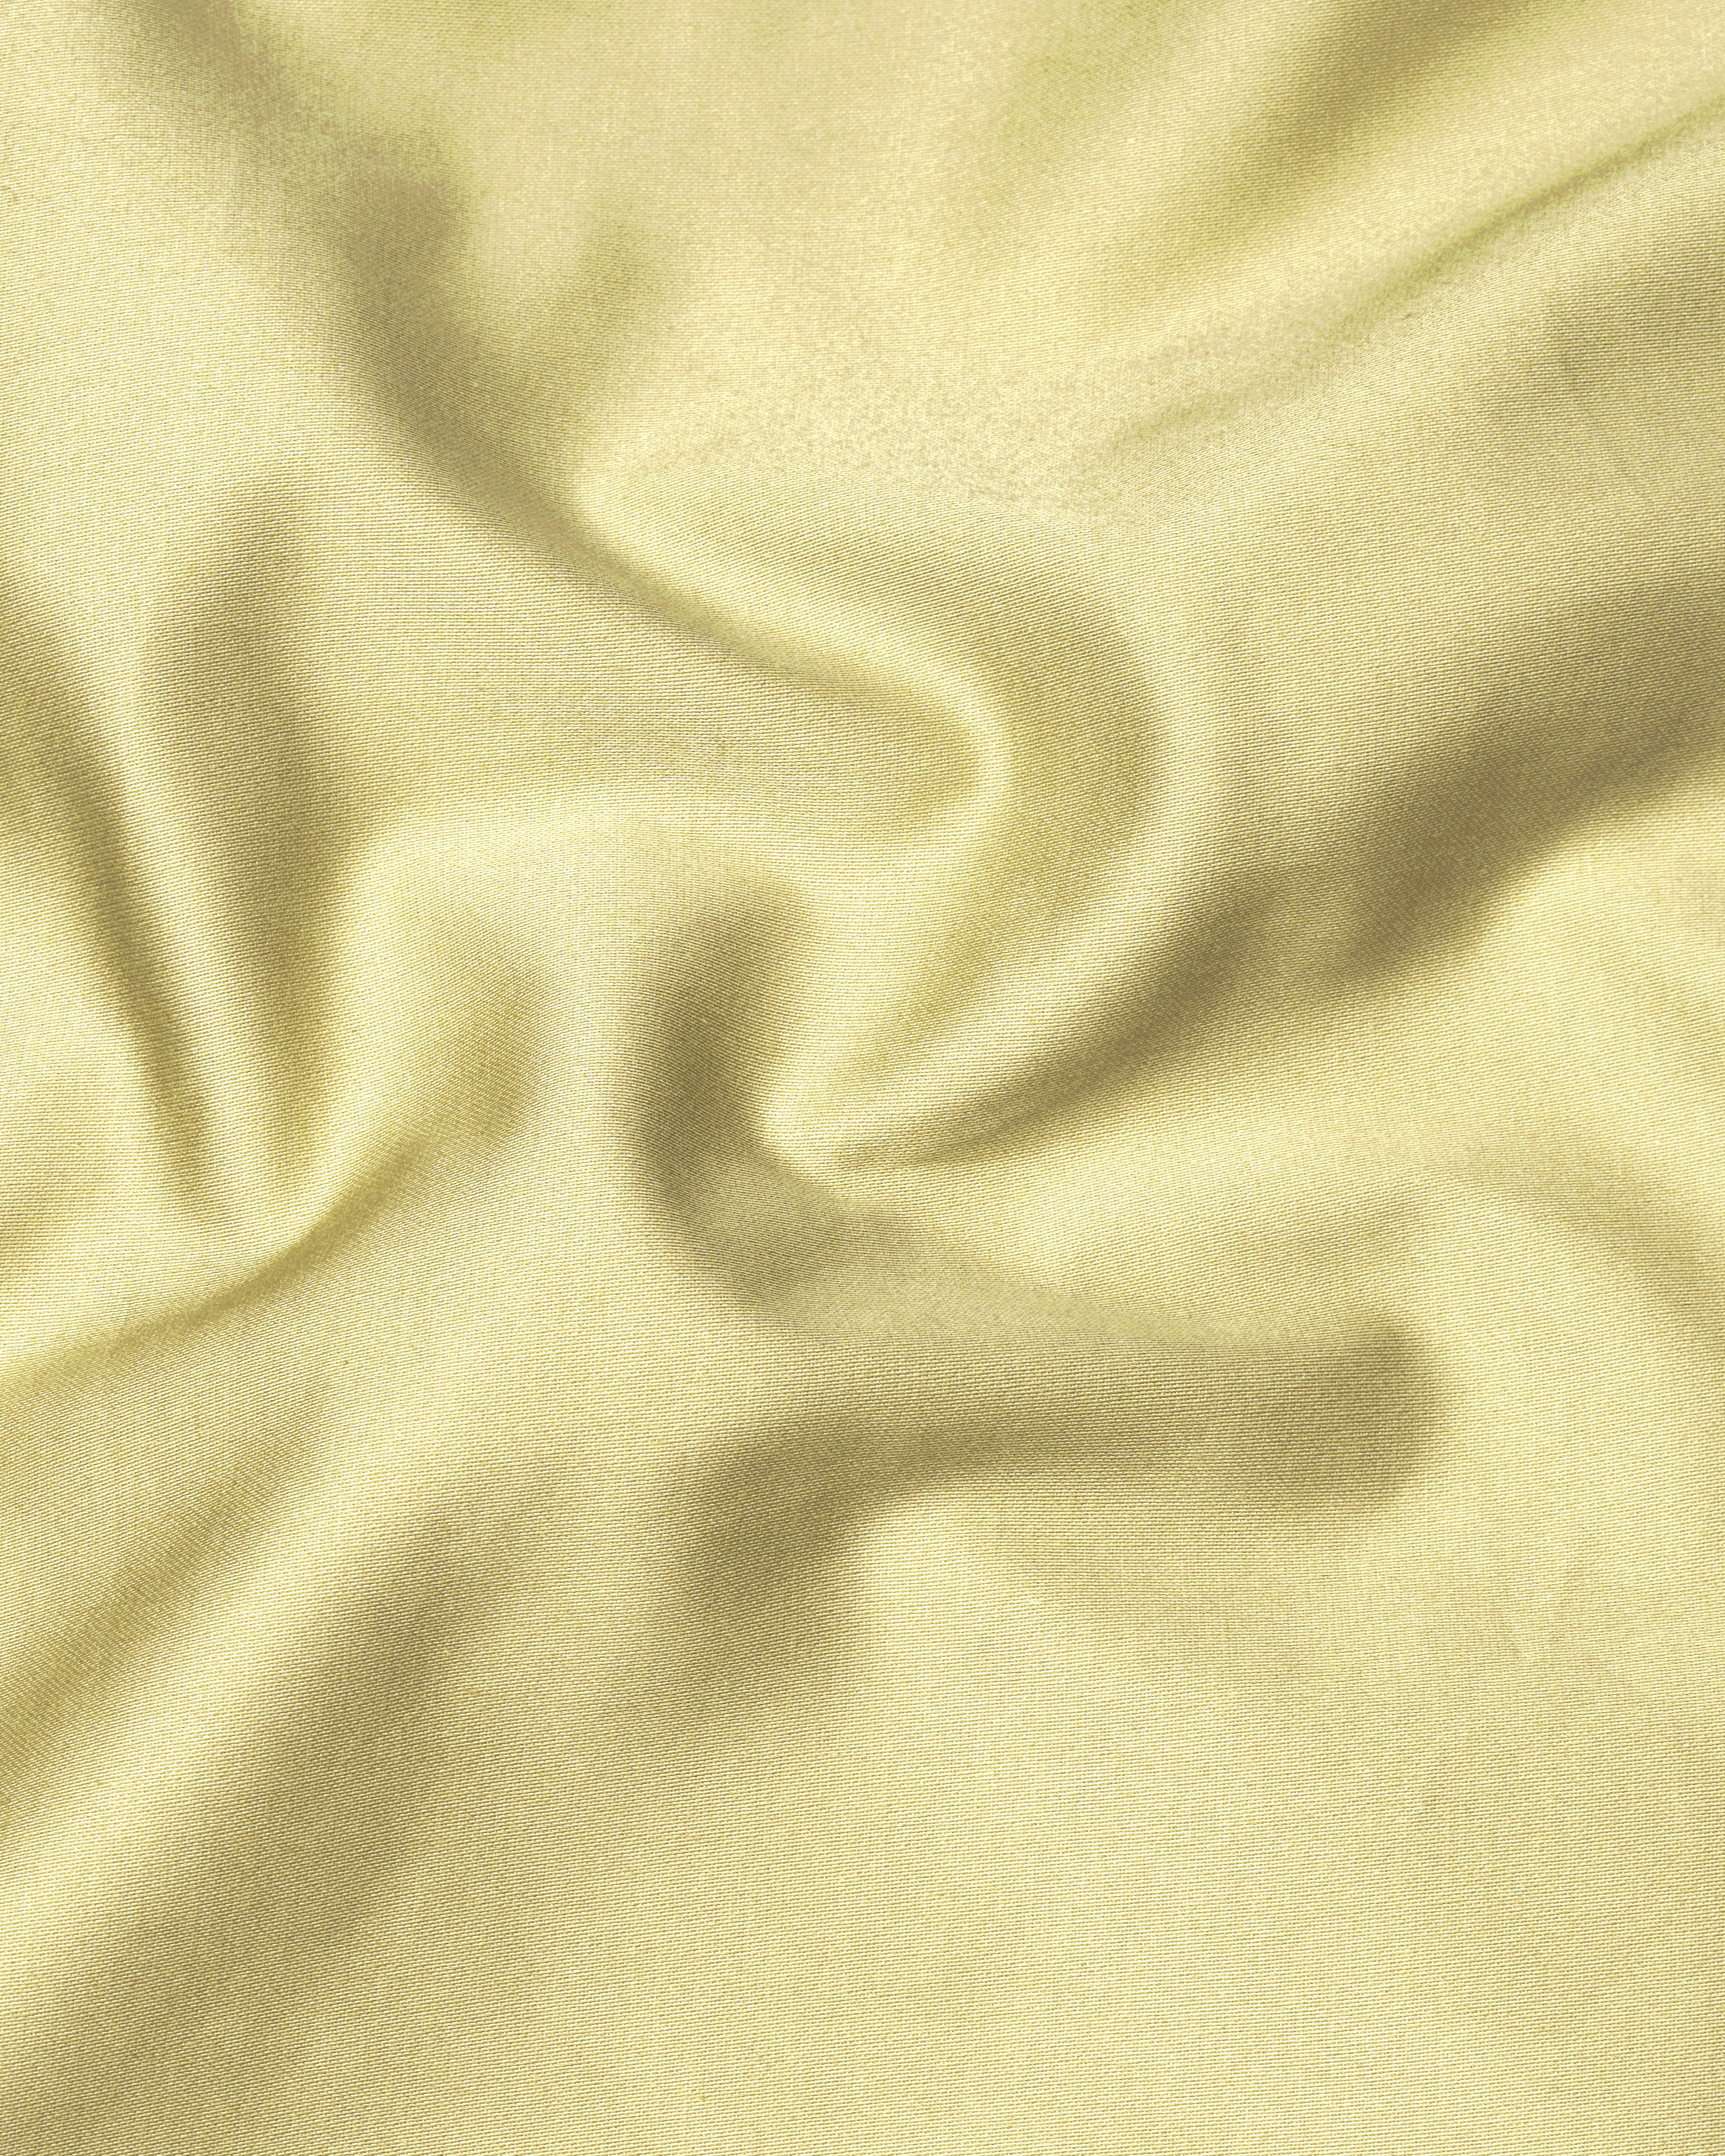 Maize Light Brown Stretchable Premium Cotton Nehru jacket WC2659-36, WC2659-38, WC2659-40, WC2659-42, WC2659-44, WC2659-46, WC2659-48, WC2659-50, WC2659-52, WC2659-54, WC2659-56, WC2659-58, WC2659-60